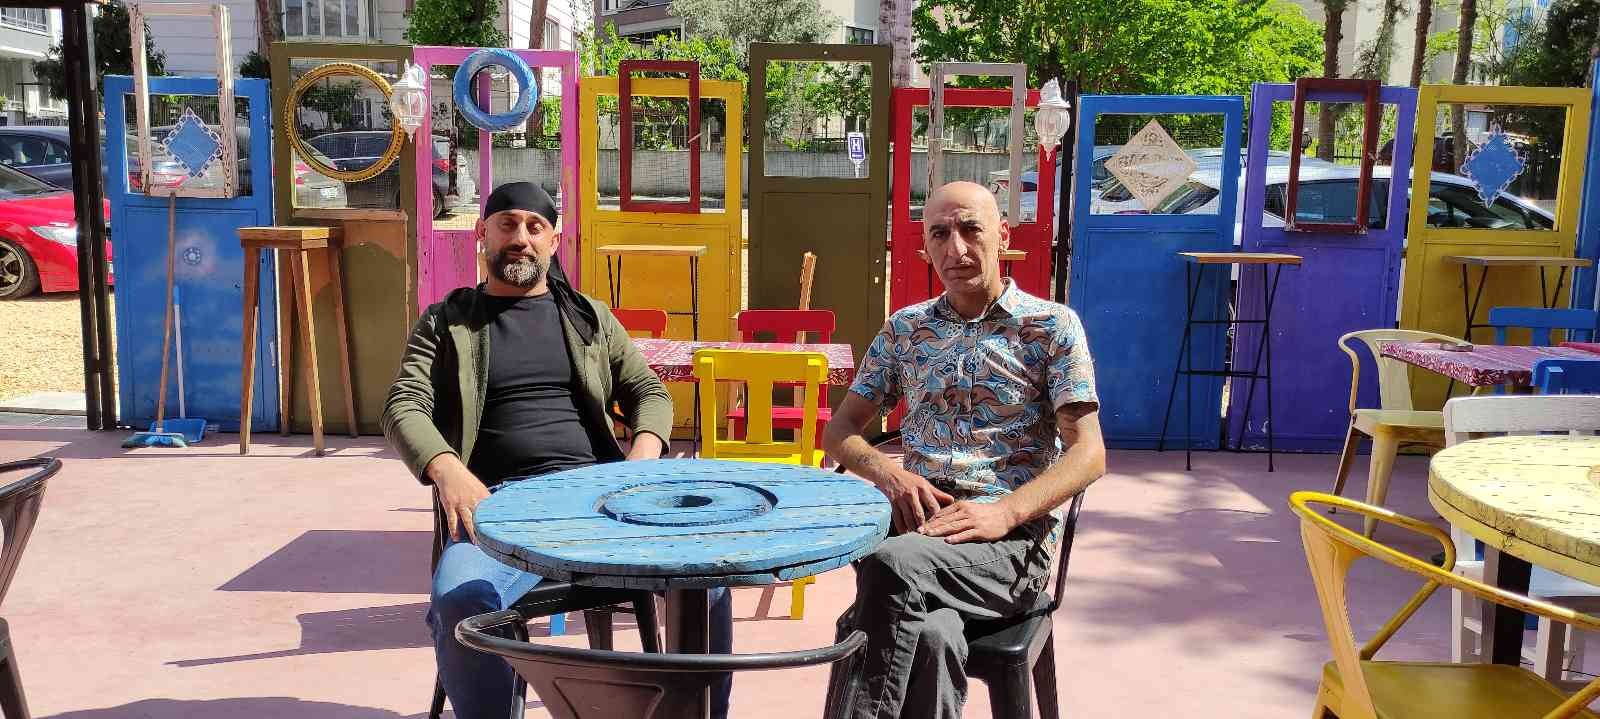 Bursa’da 2 arkadaş 7 milyon liraya açtıkları kafenin masa, sandalye ve dekorasyonunu geri dönüşüm malzemelerinden yaptı. 3 yıl önce kafe açmaya ...